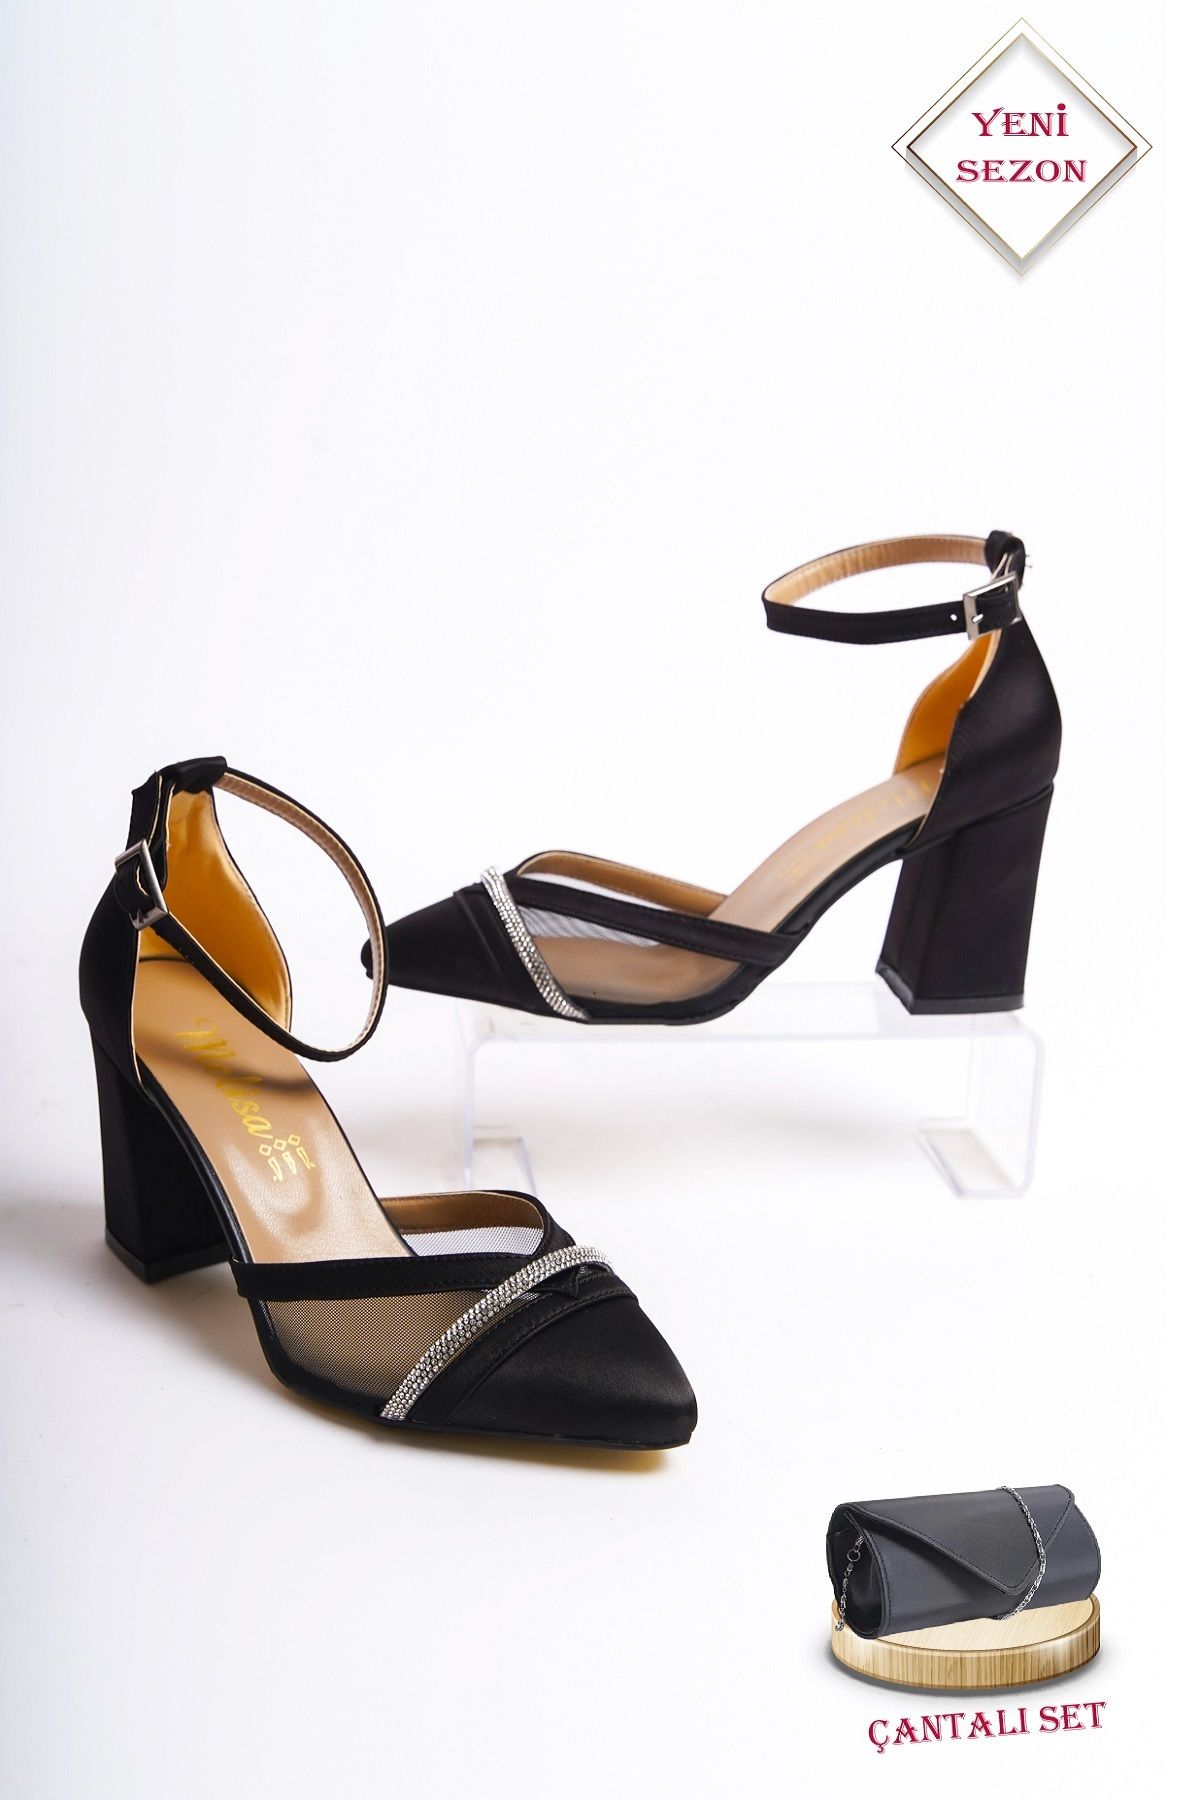 CAMOLLA Siyah Saten Taşlı Fileli Kalın Topuklu Ayakkabı ve Saten Clutch Portföy Çanta Seti